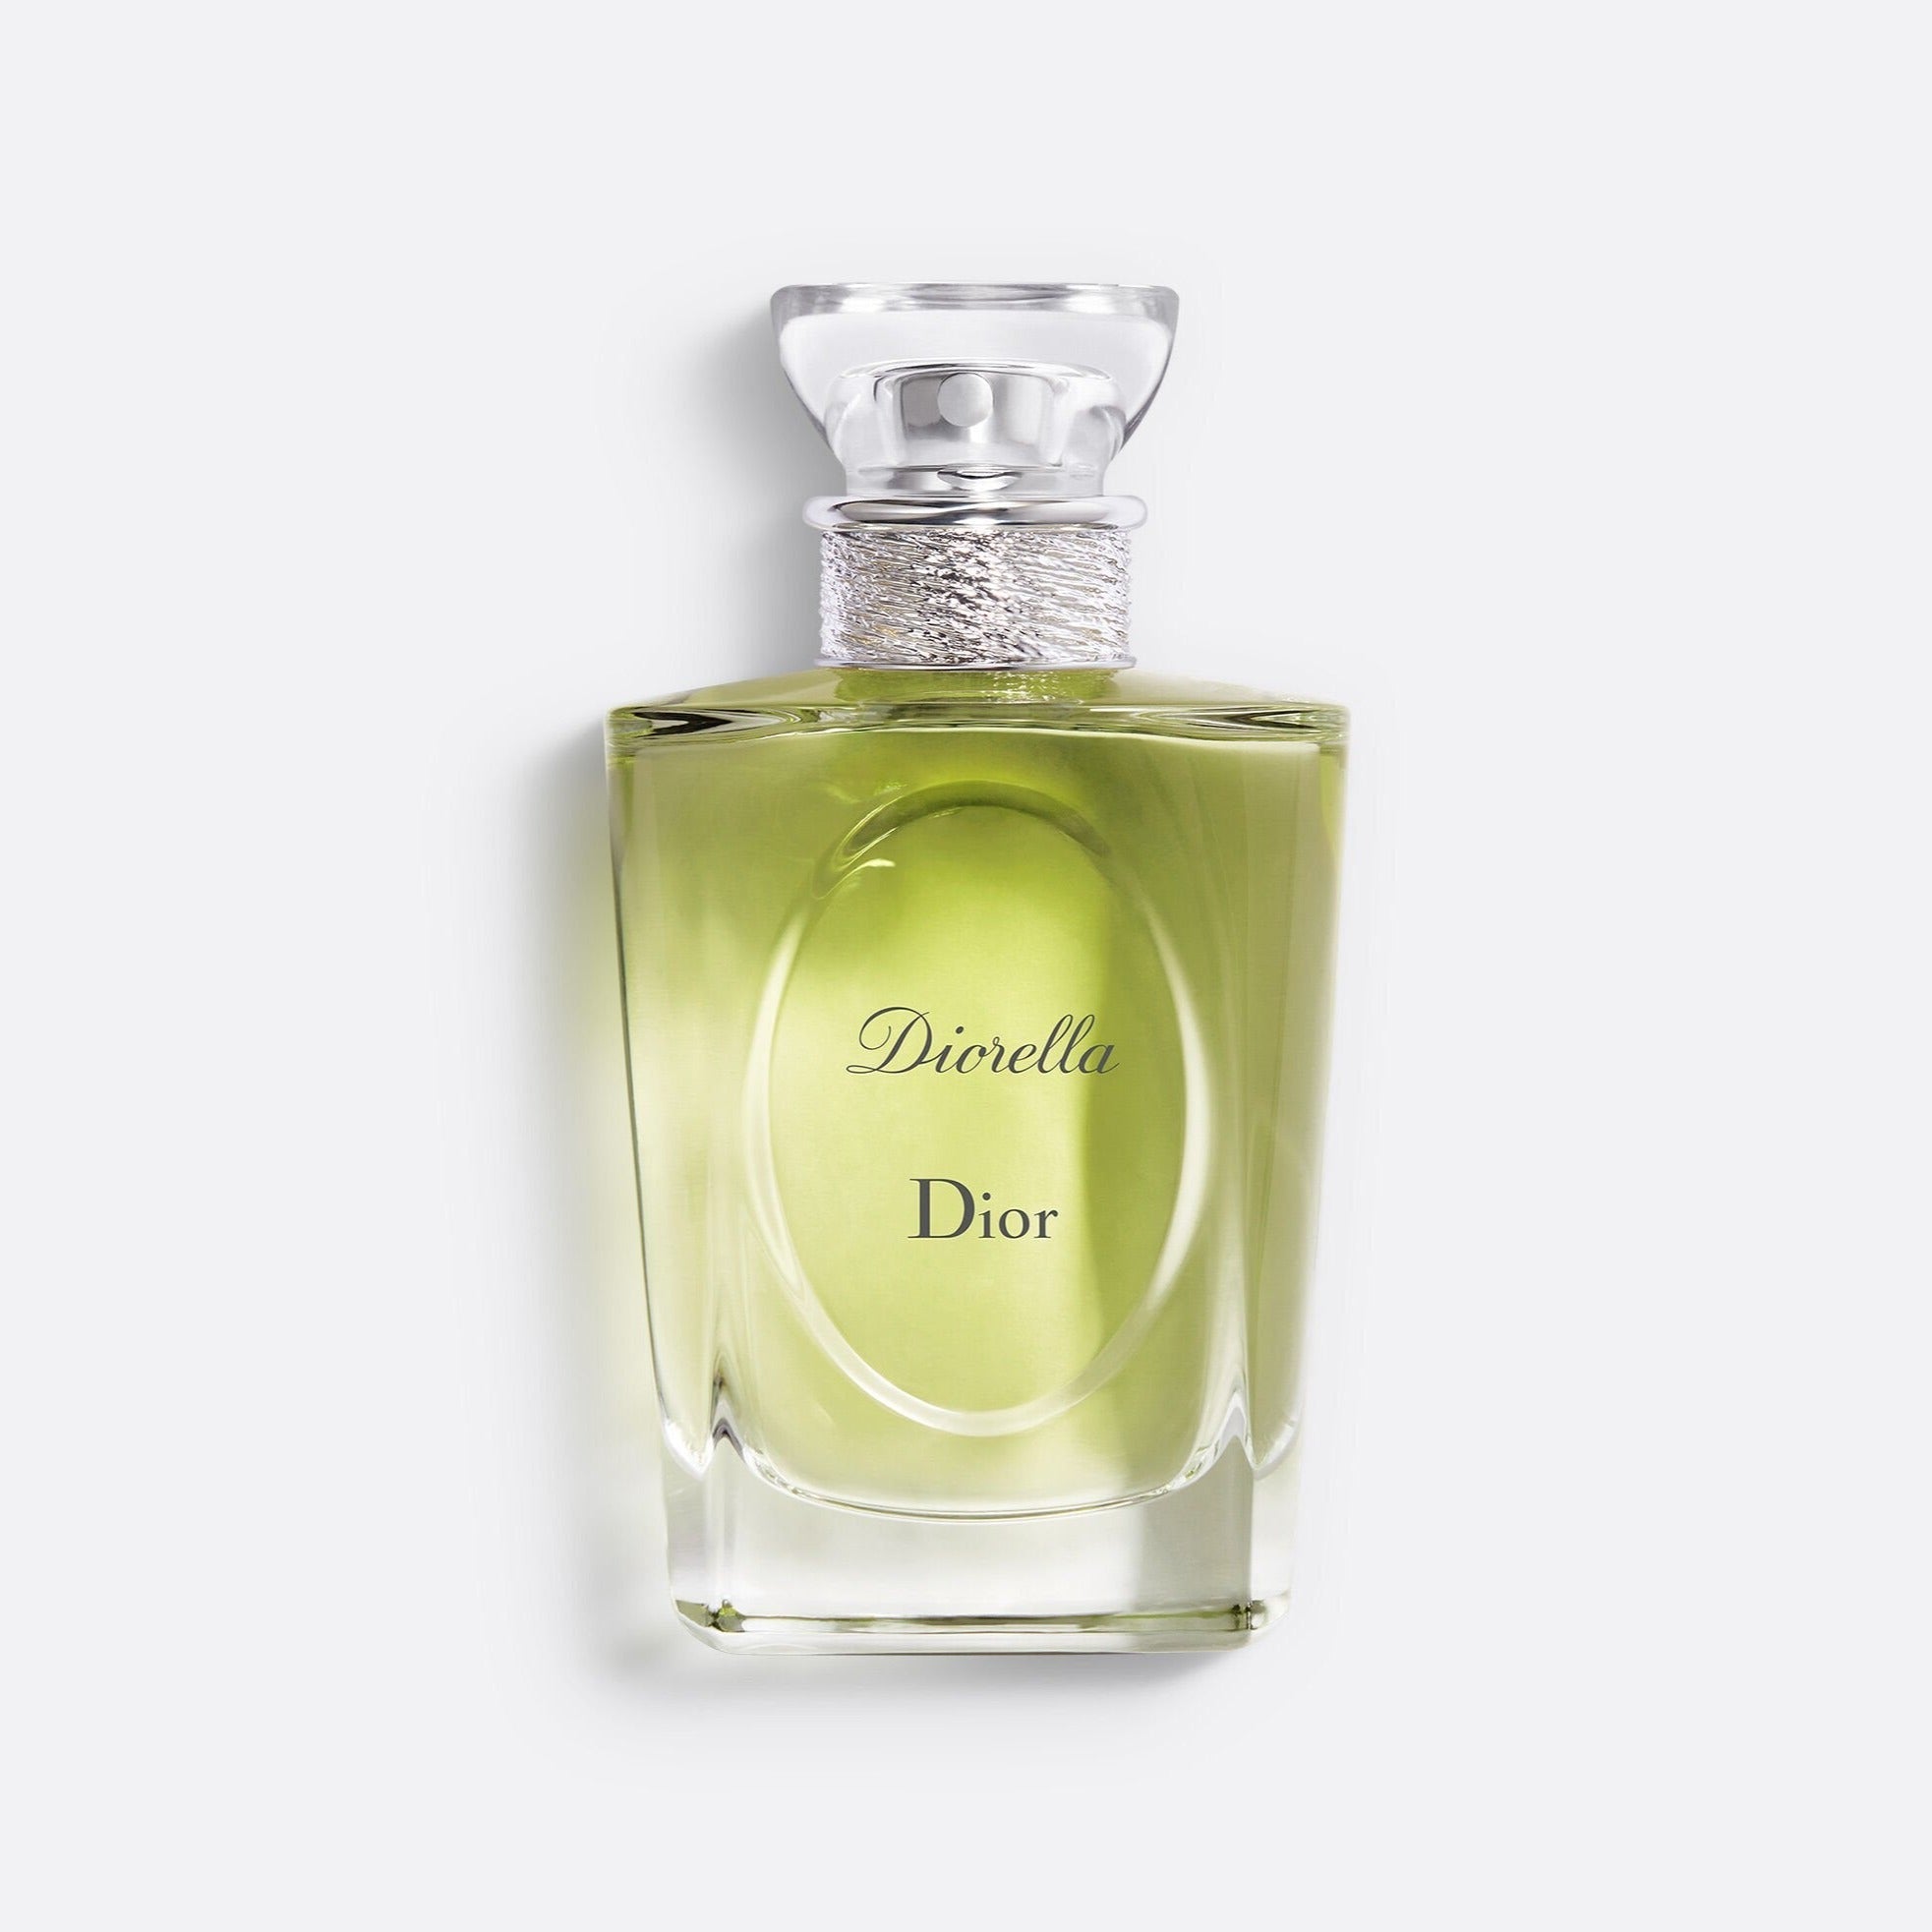 Dior Diorella EDT | My Perfume Shop Australia